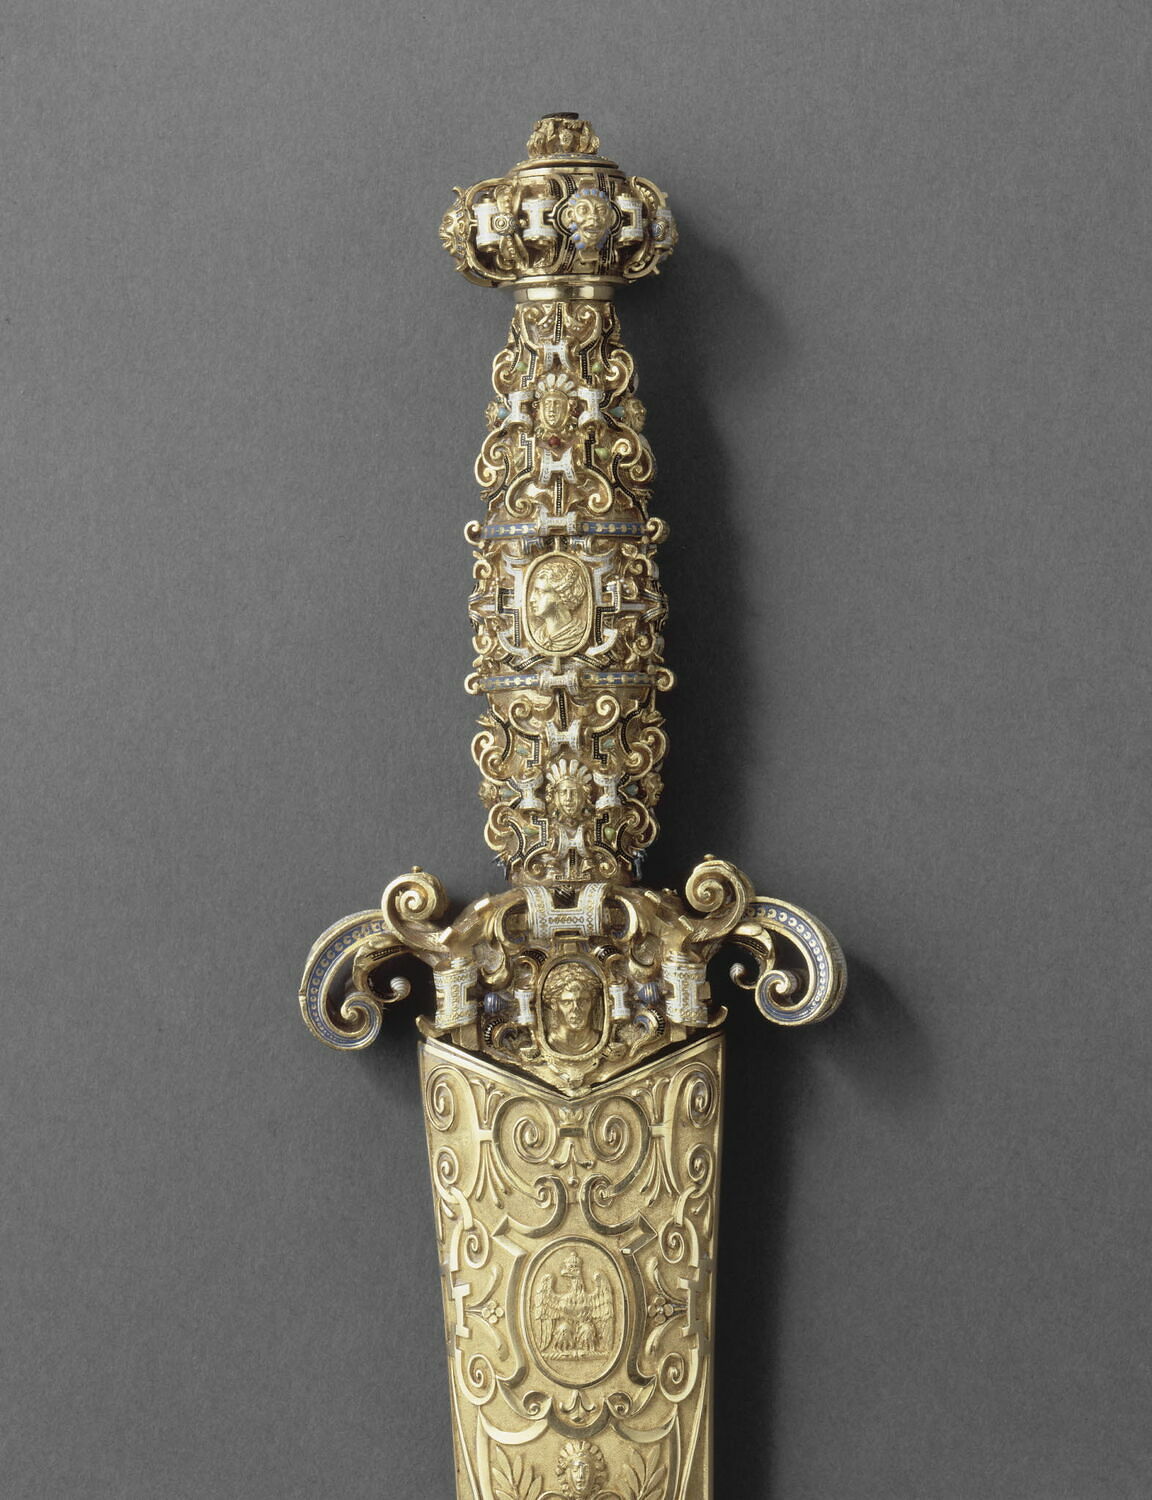 Grand_Master_of_Malta's_dagger_ (Louvre).JPG